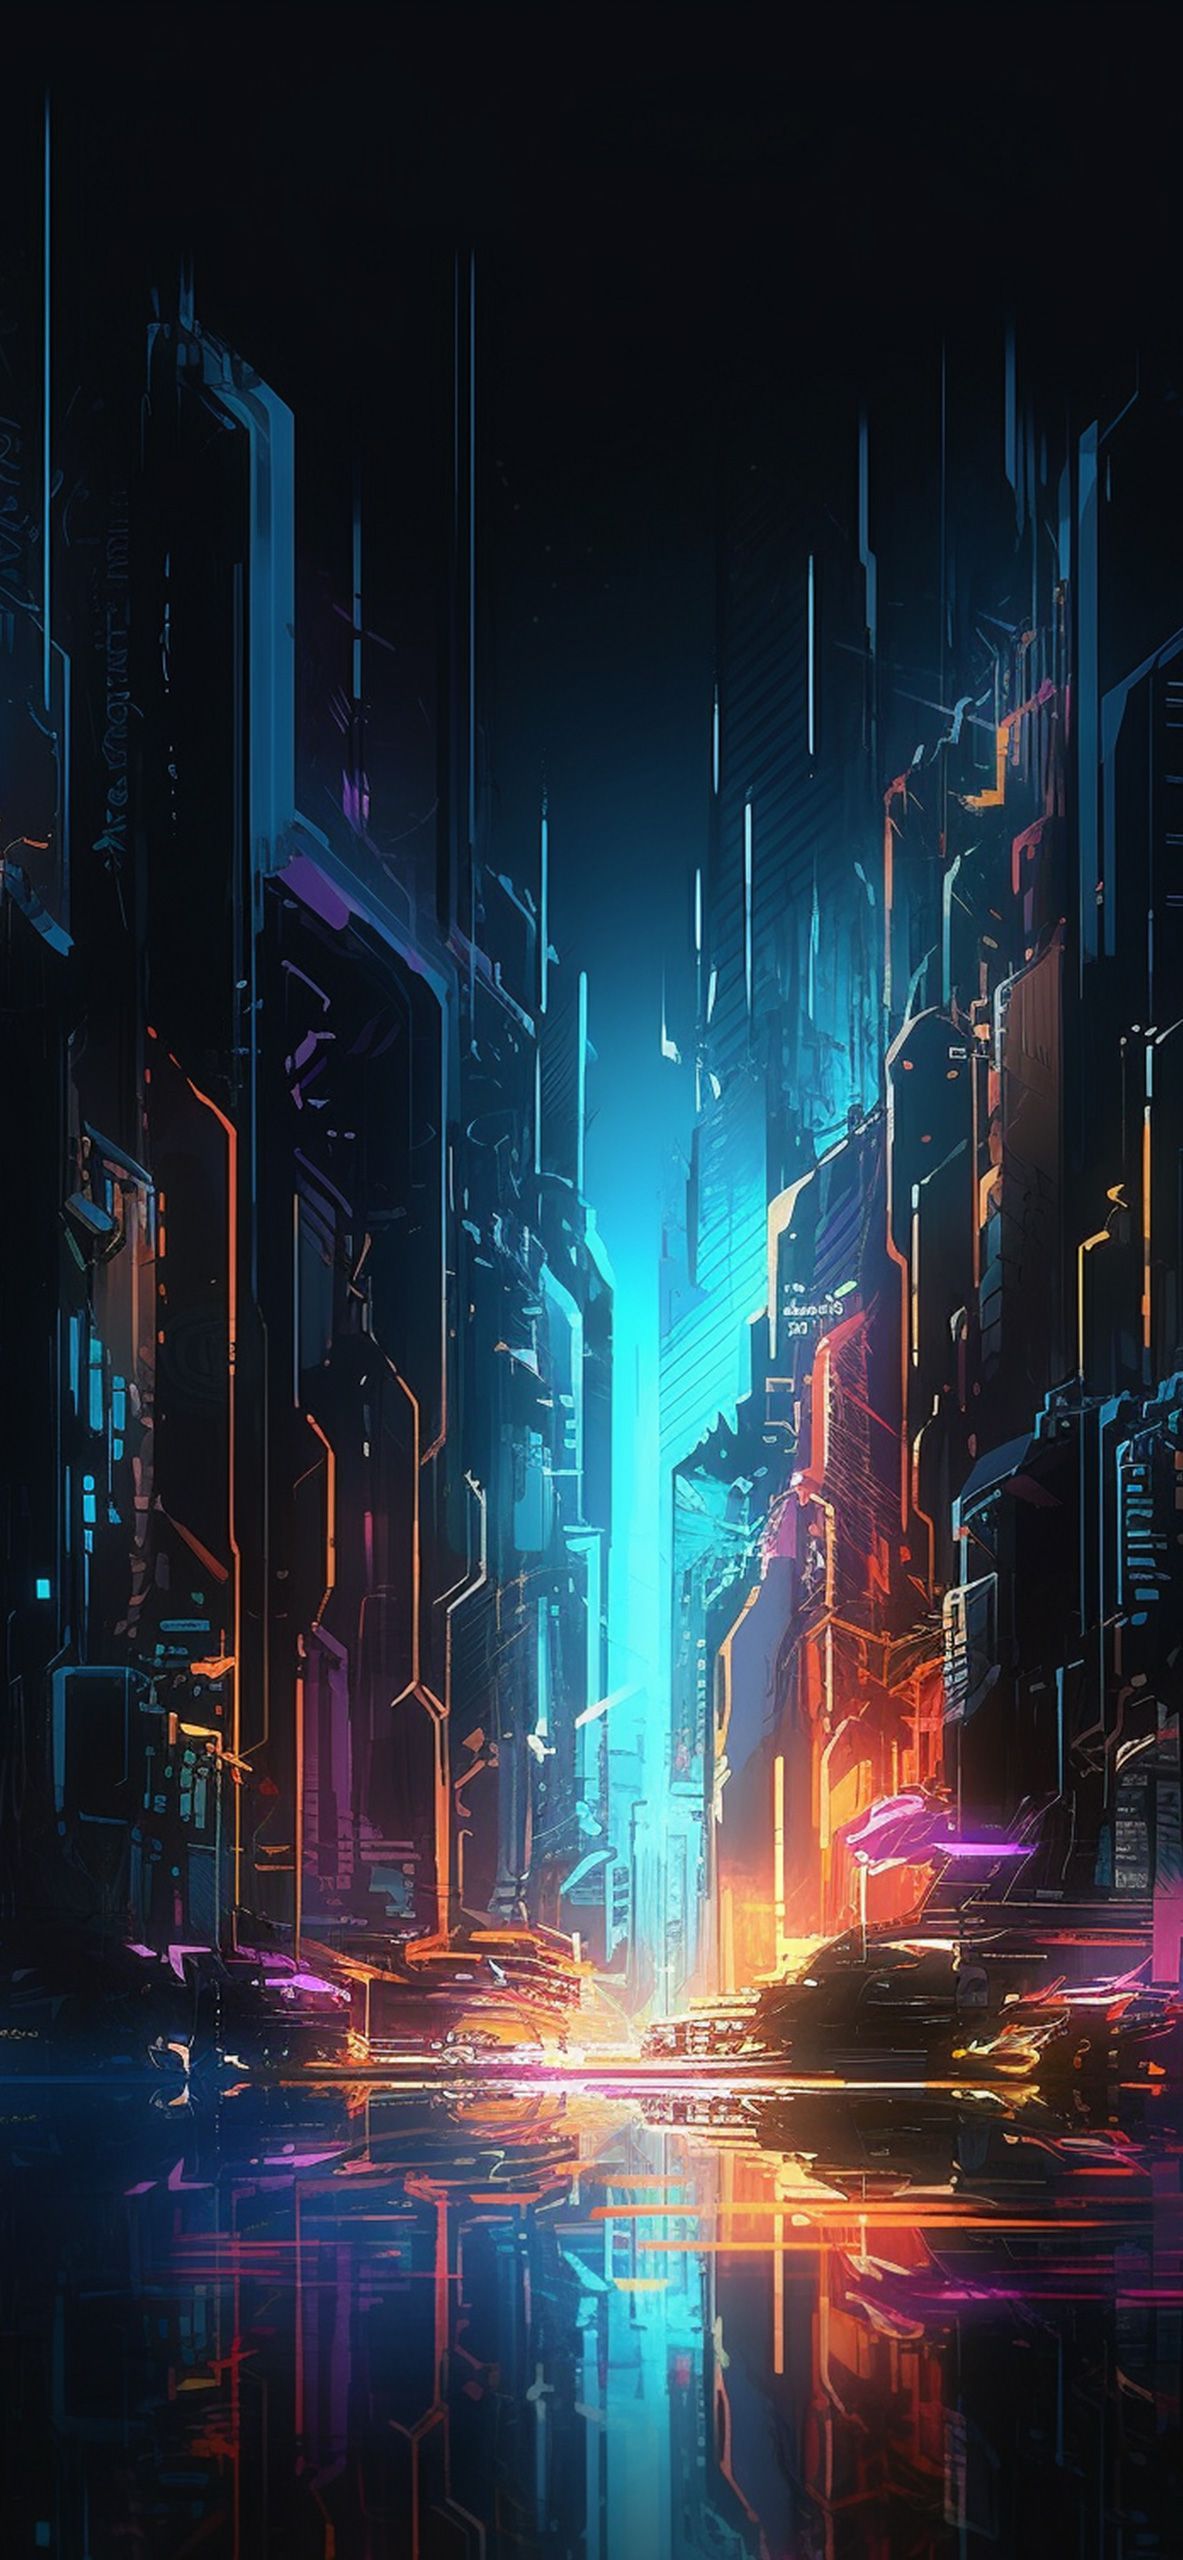 Cyberpunk City Abstract Wallpaper City Wallpaper iPhone